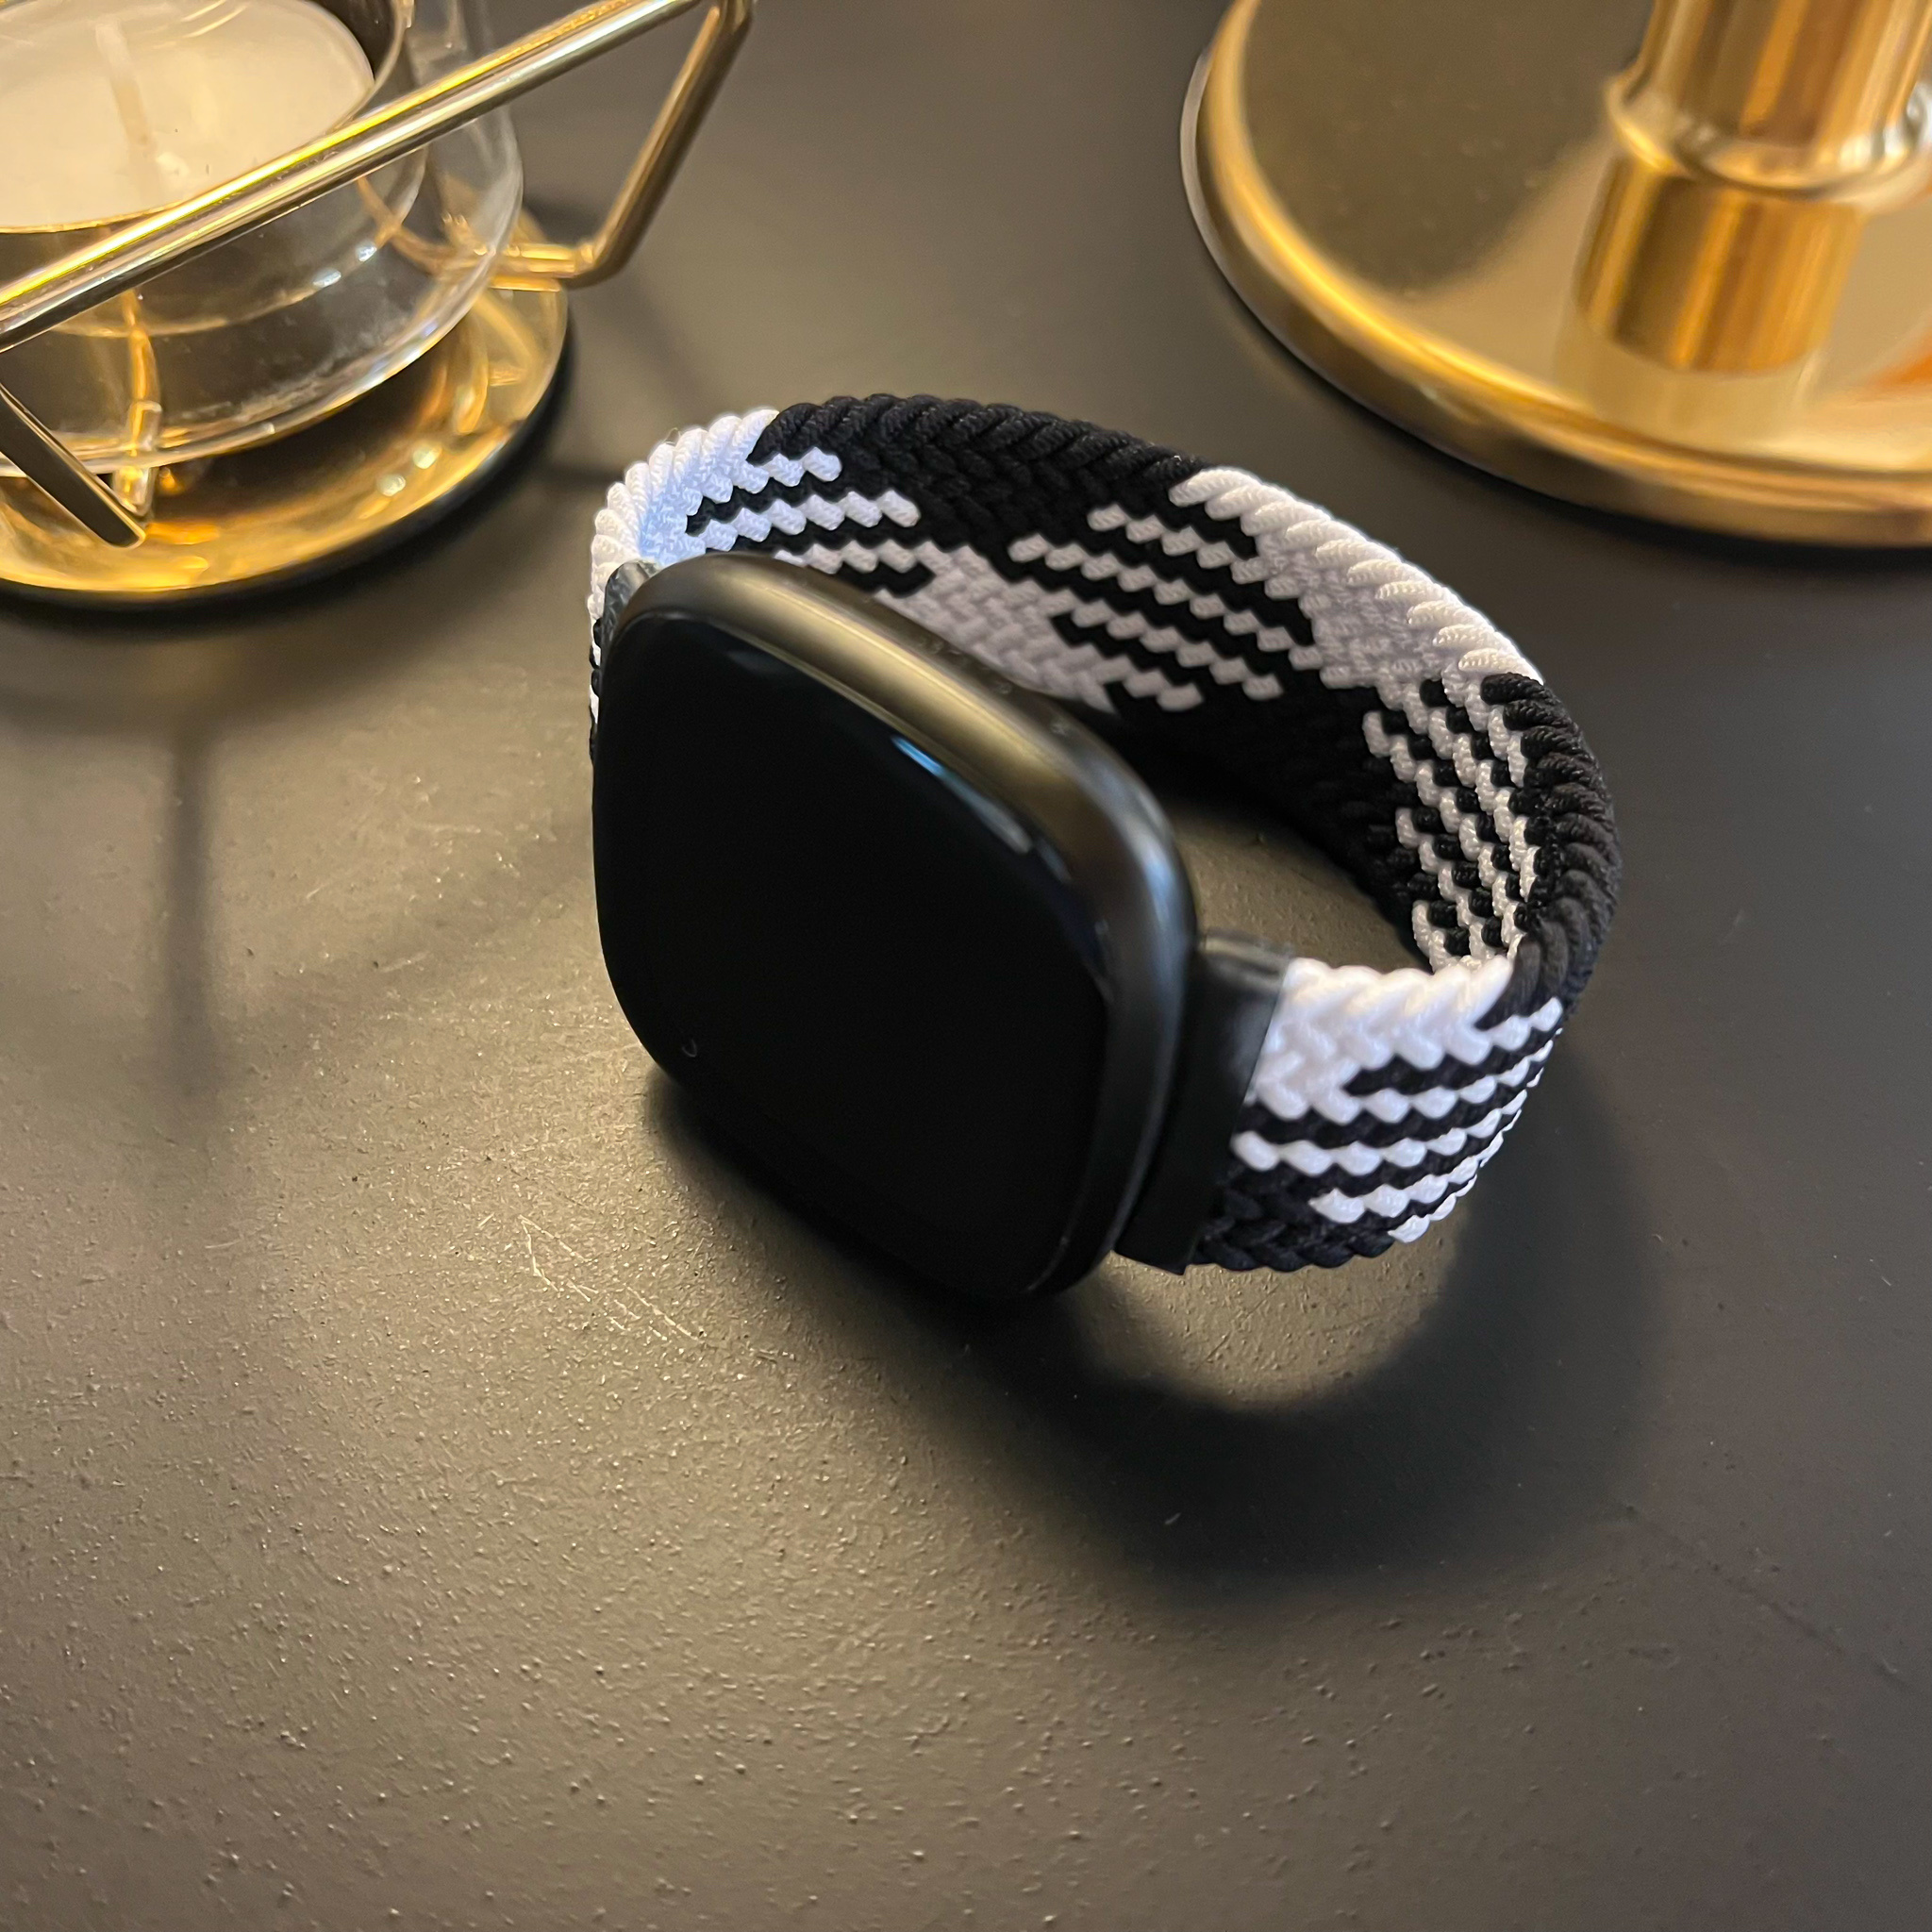 Cinturino Solo intrecciato in nylon per Fitbit Versa 3 / Sense - bianco nero